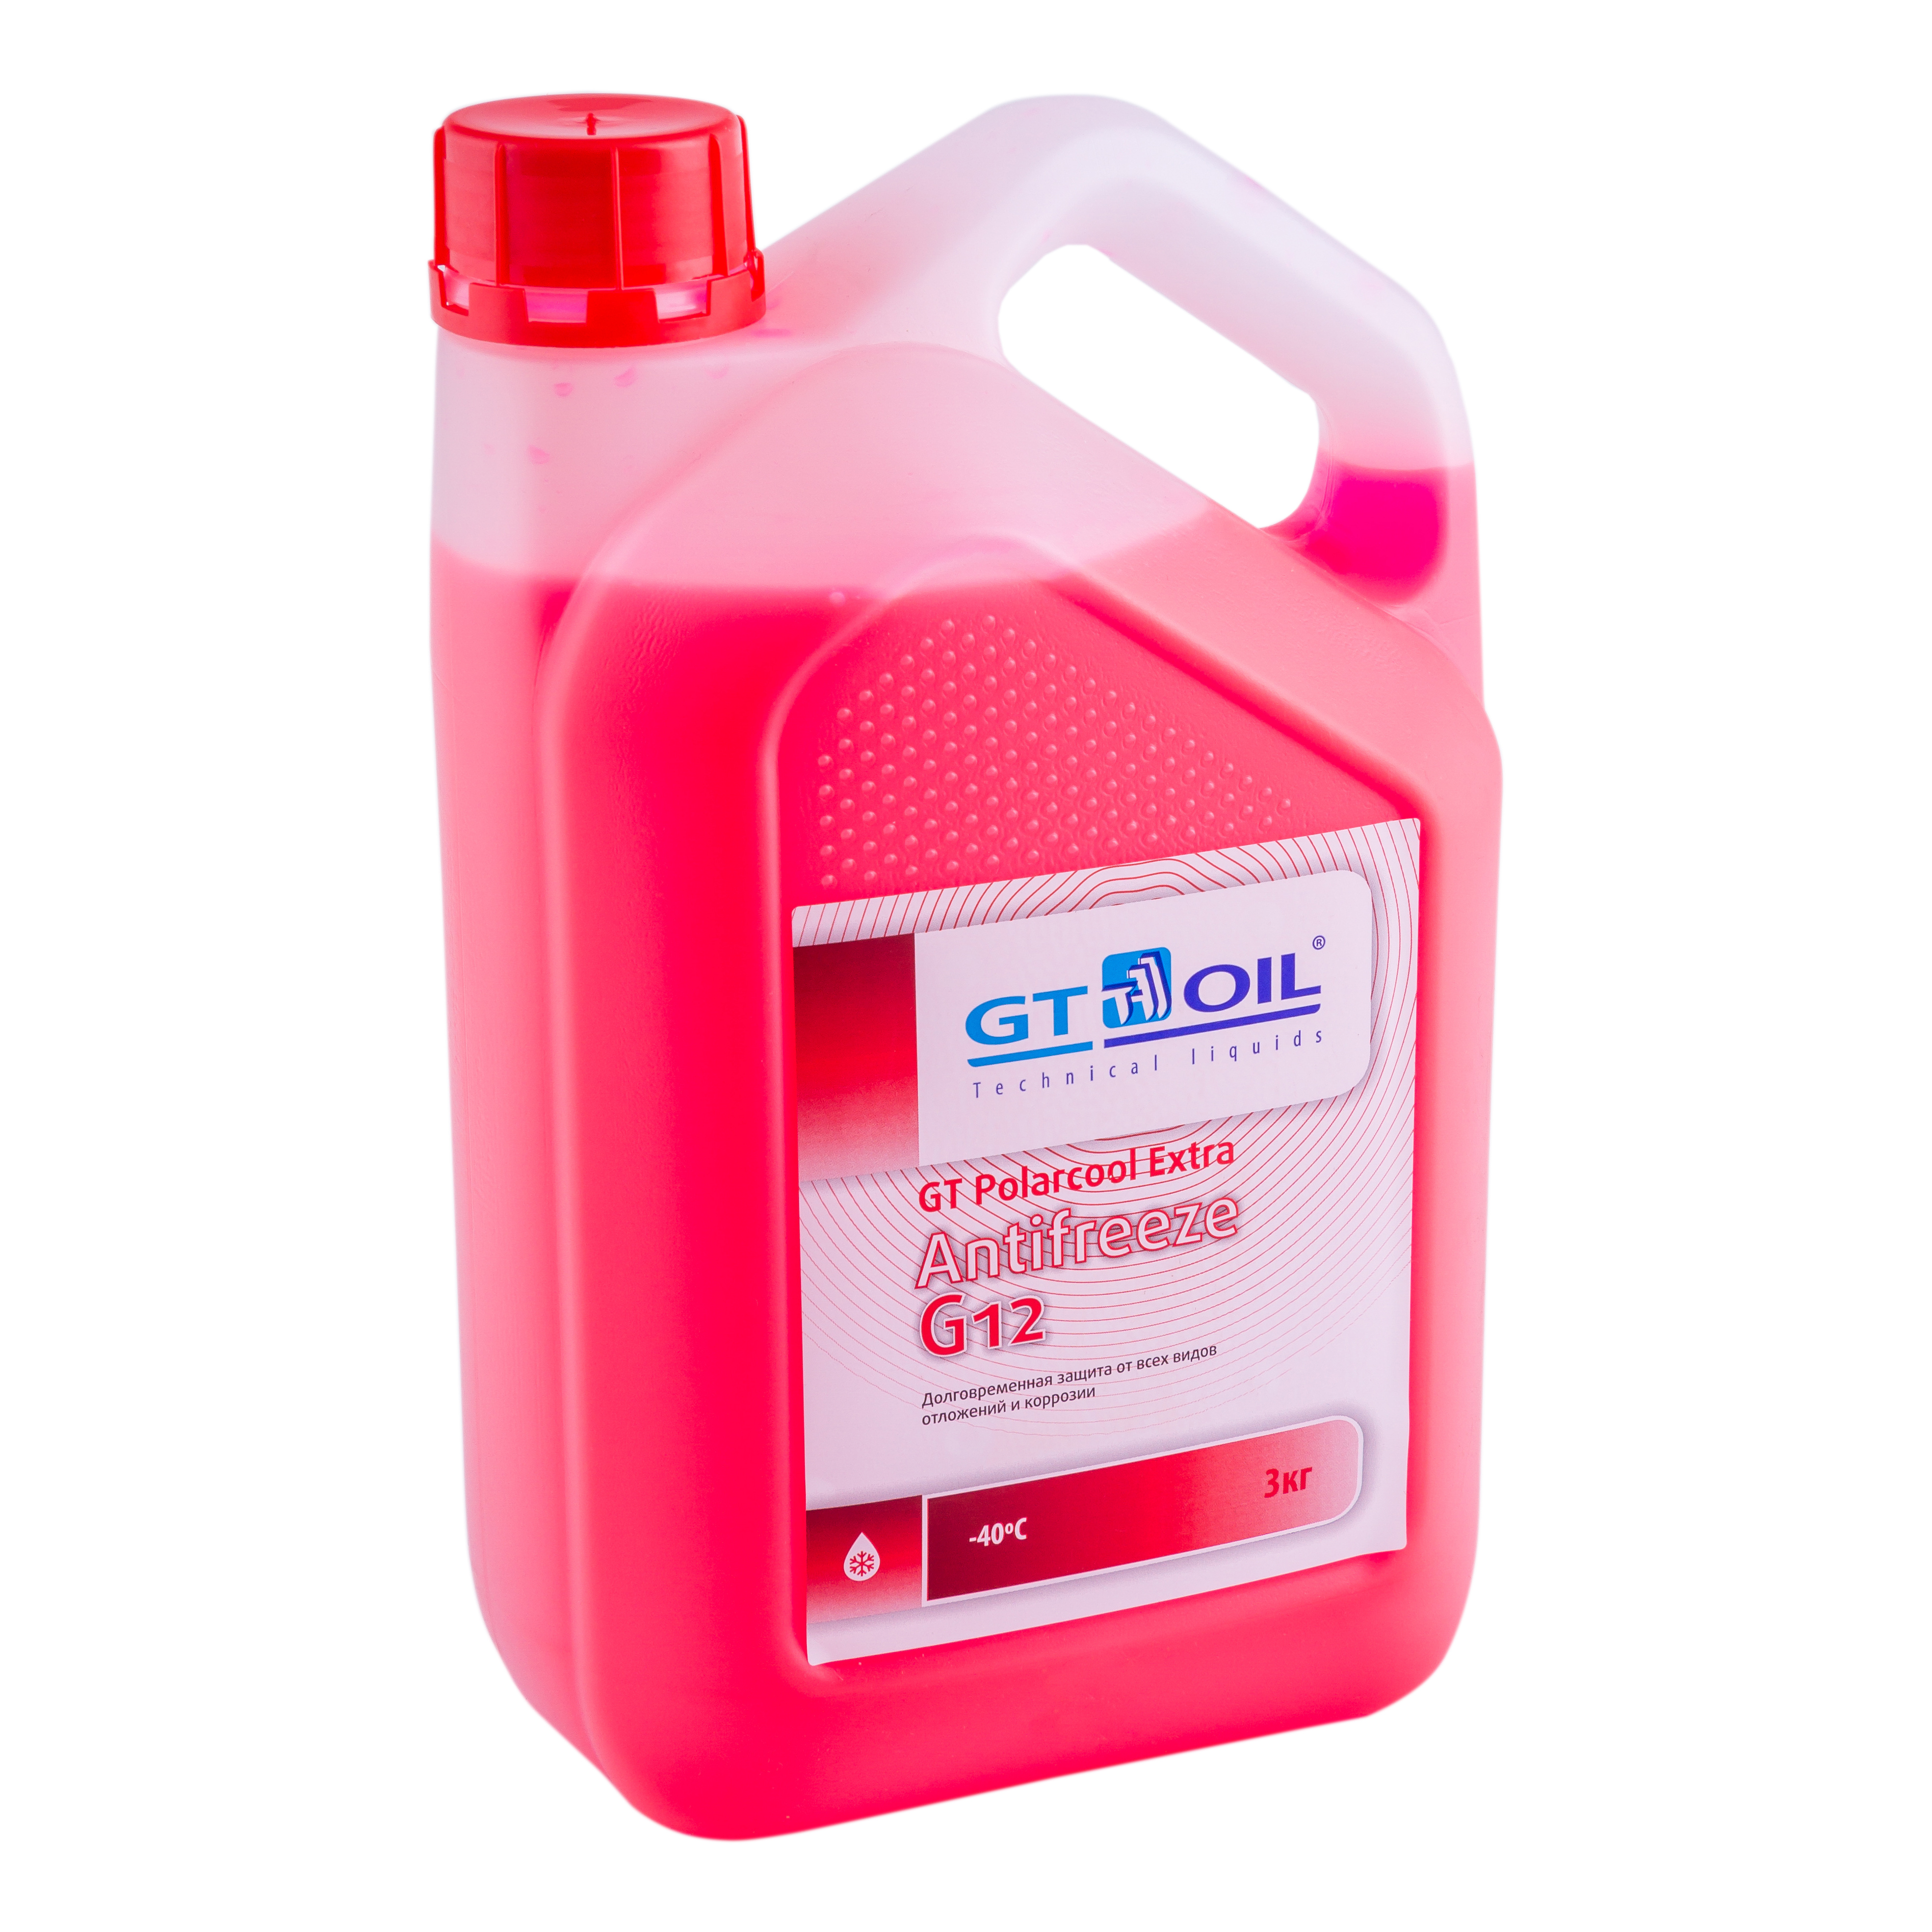 Антифриз GT OIL POLARCOOL EXTRA G12, красный, 3 кг